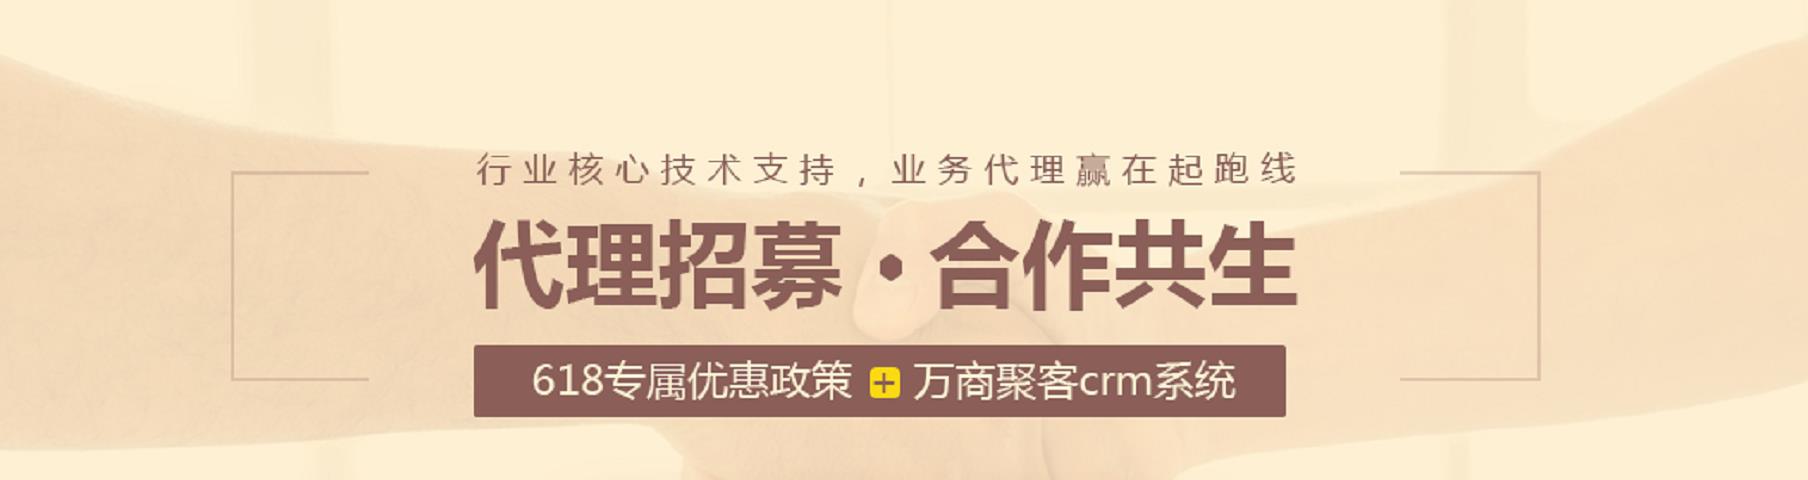 最新域名注册活动_中文商务服务优惠-成都万商云集科技股份有限公司